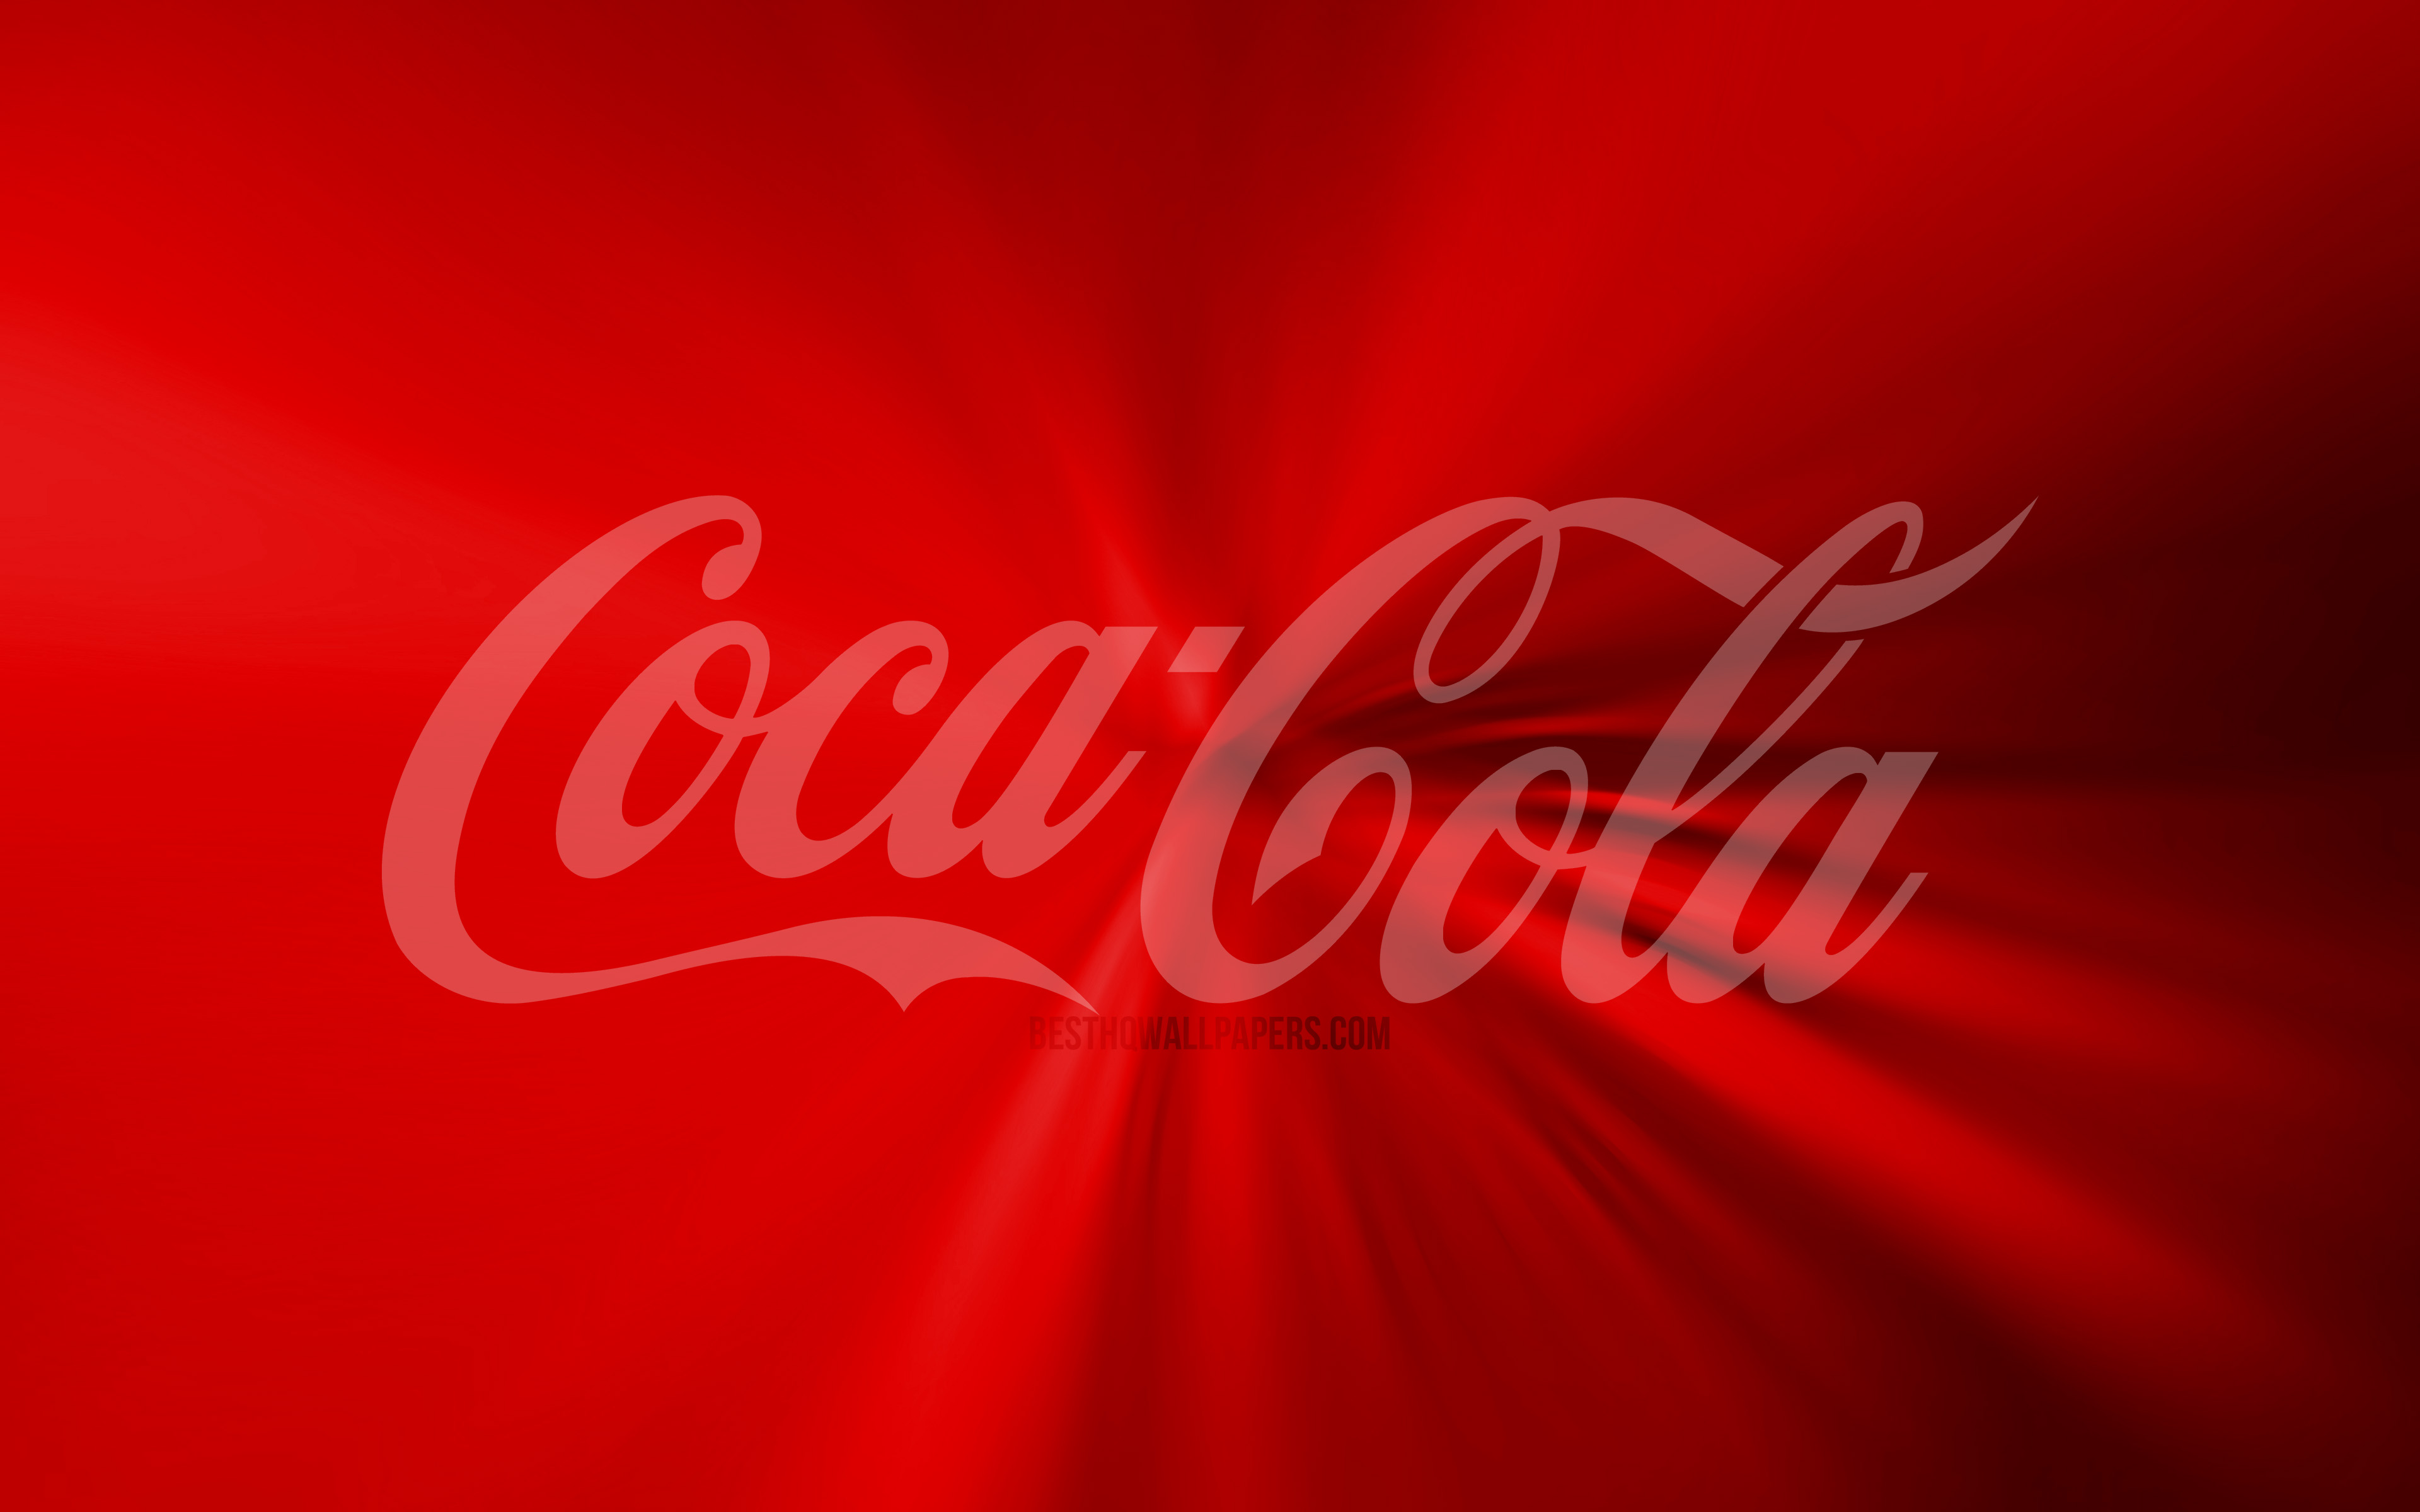 ダウンロード画像 コカ コーラのロゴ 4k 渦 赤の背景 創造 作品 ブランド コカ コーラ 画面の解像度 3840x2400 壁紙 デスクトップ上